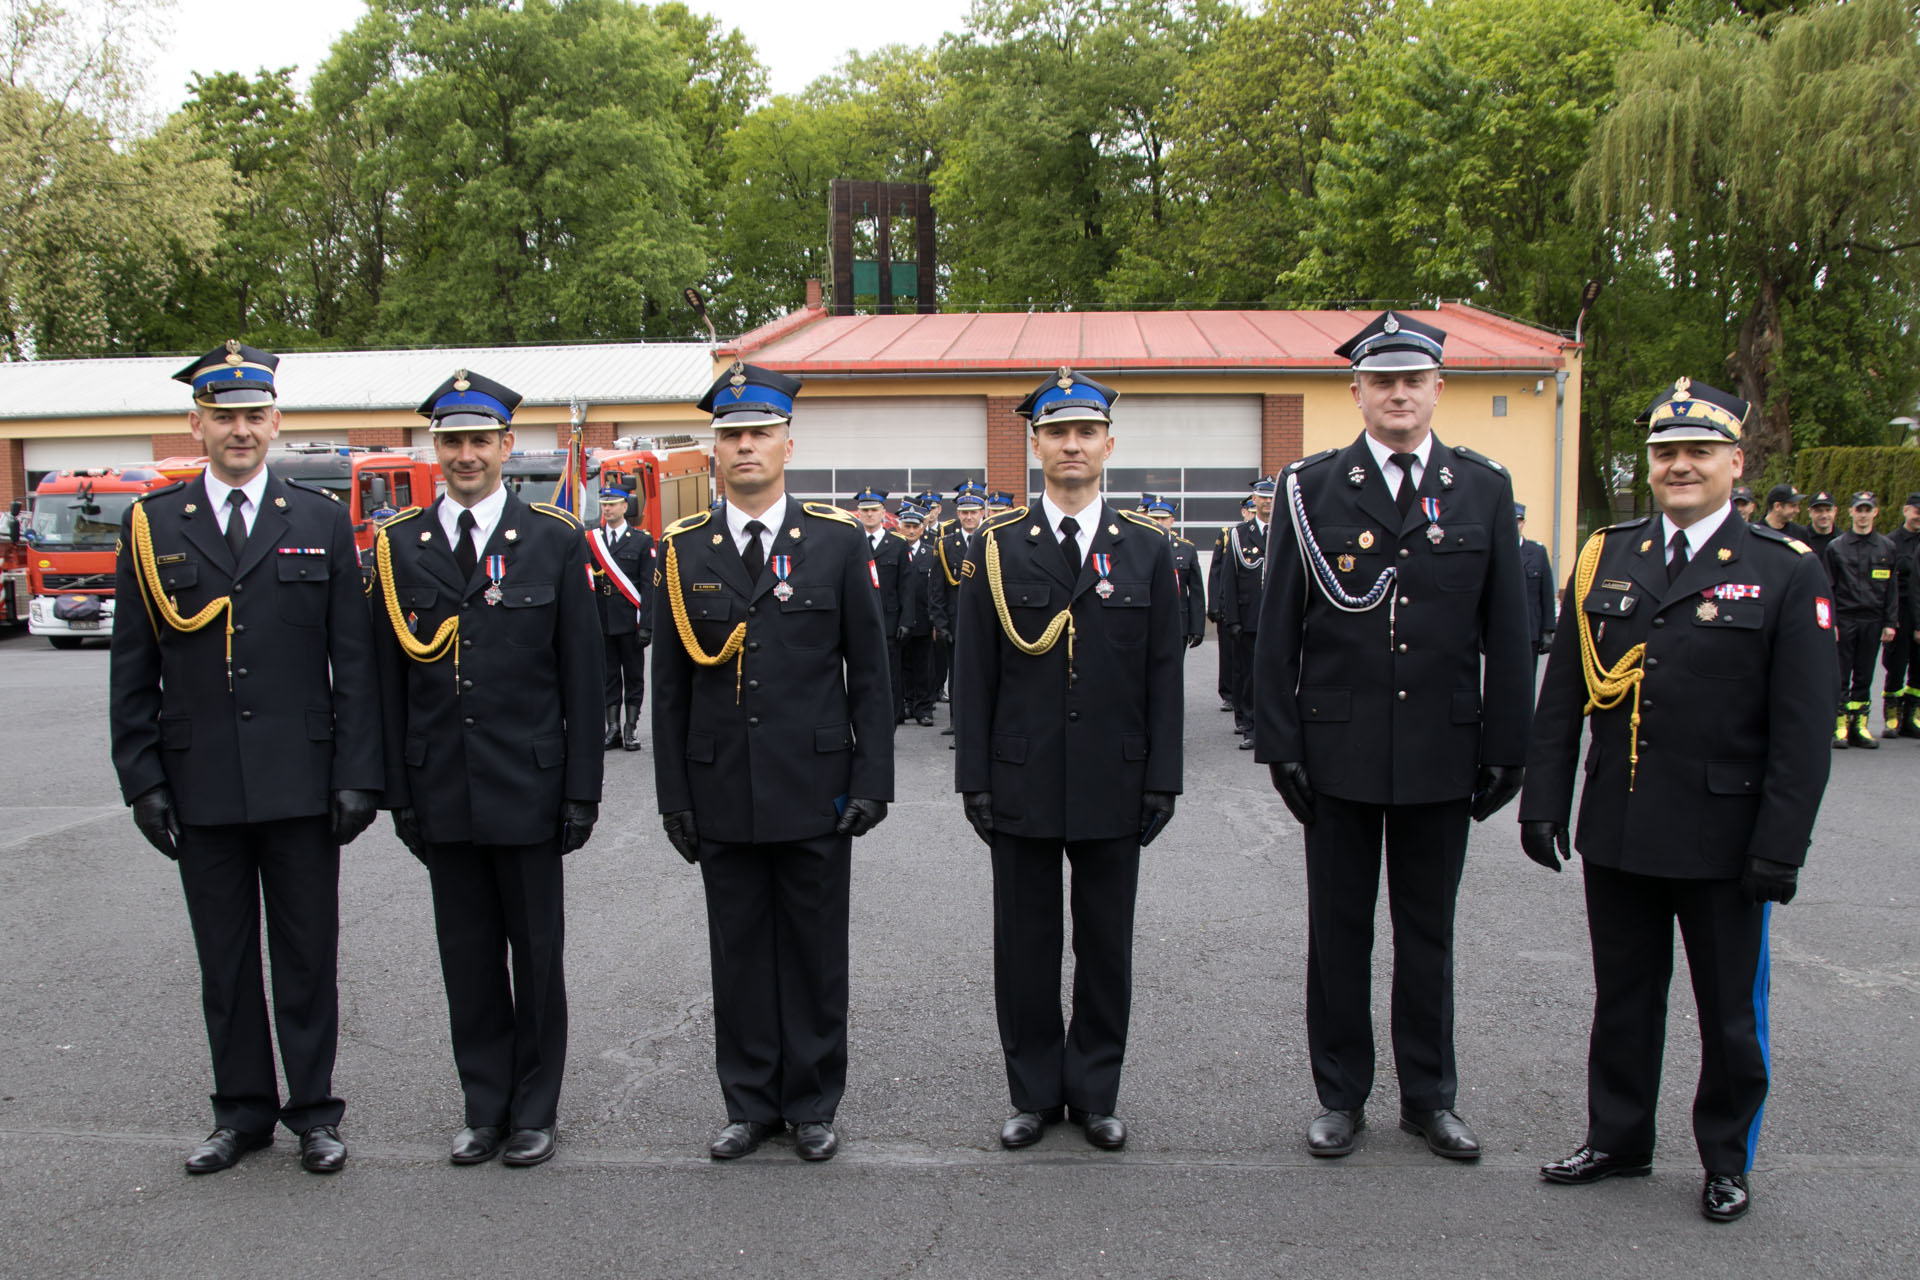 Powiatowe obchody Dnia Strażaka – strażacy odznaczeni srebrną odznaką „Zasłużony dla Ochrony Przeciwpożarowej”